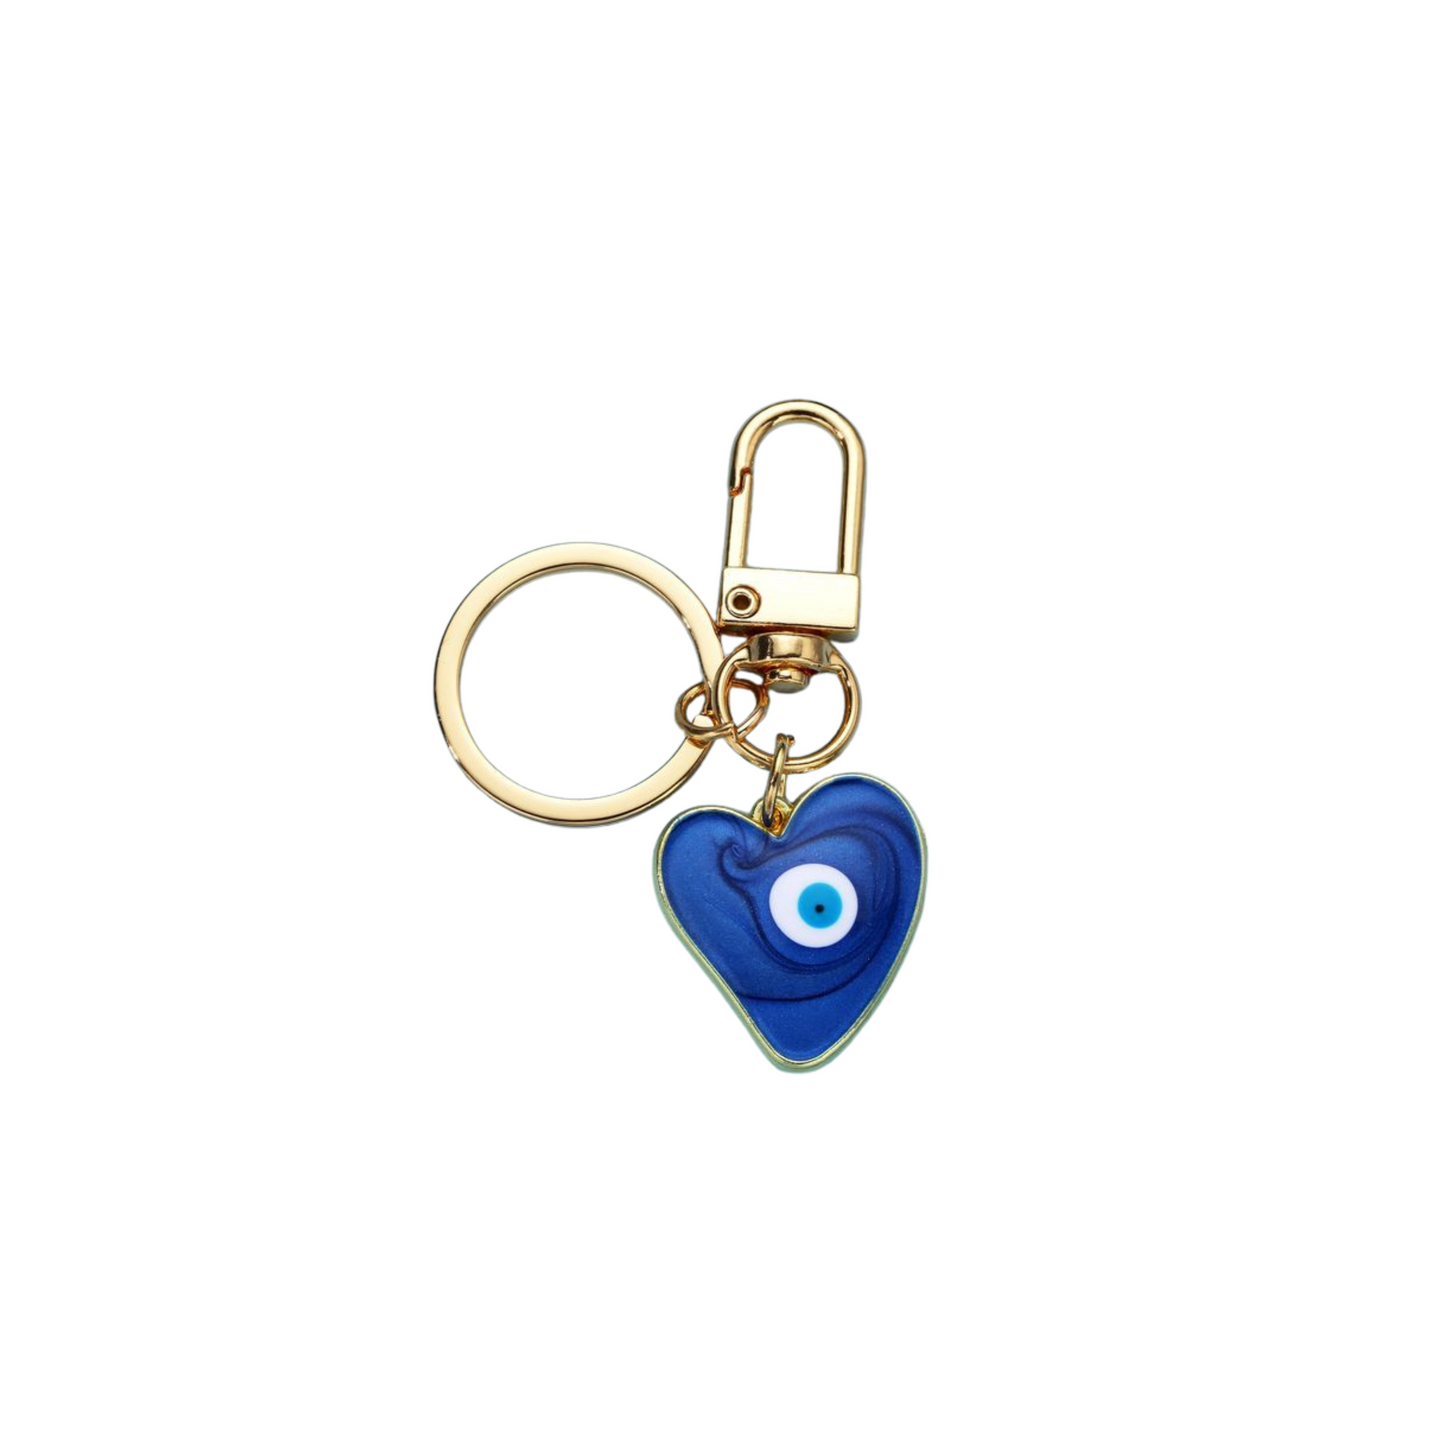 Blakely Rhode Evil Eye Heart Key Ring 